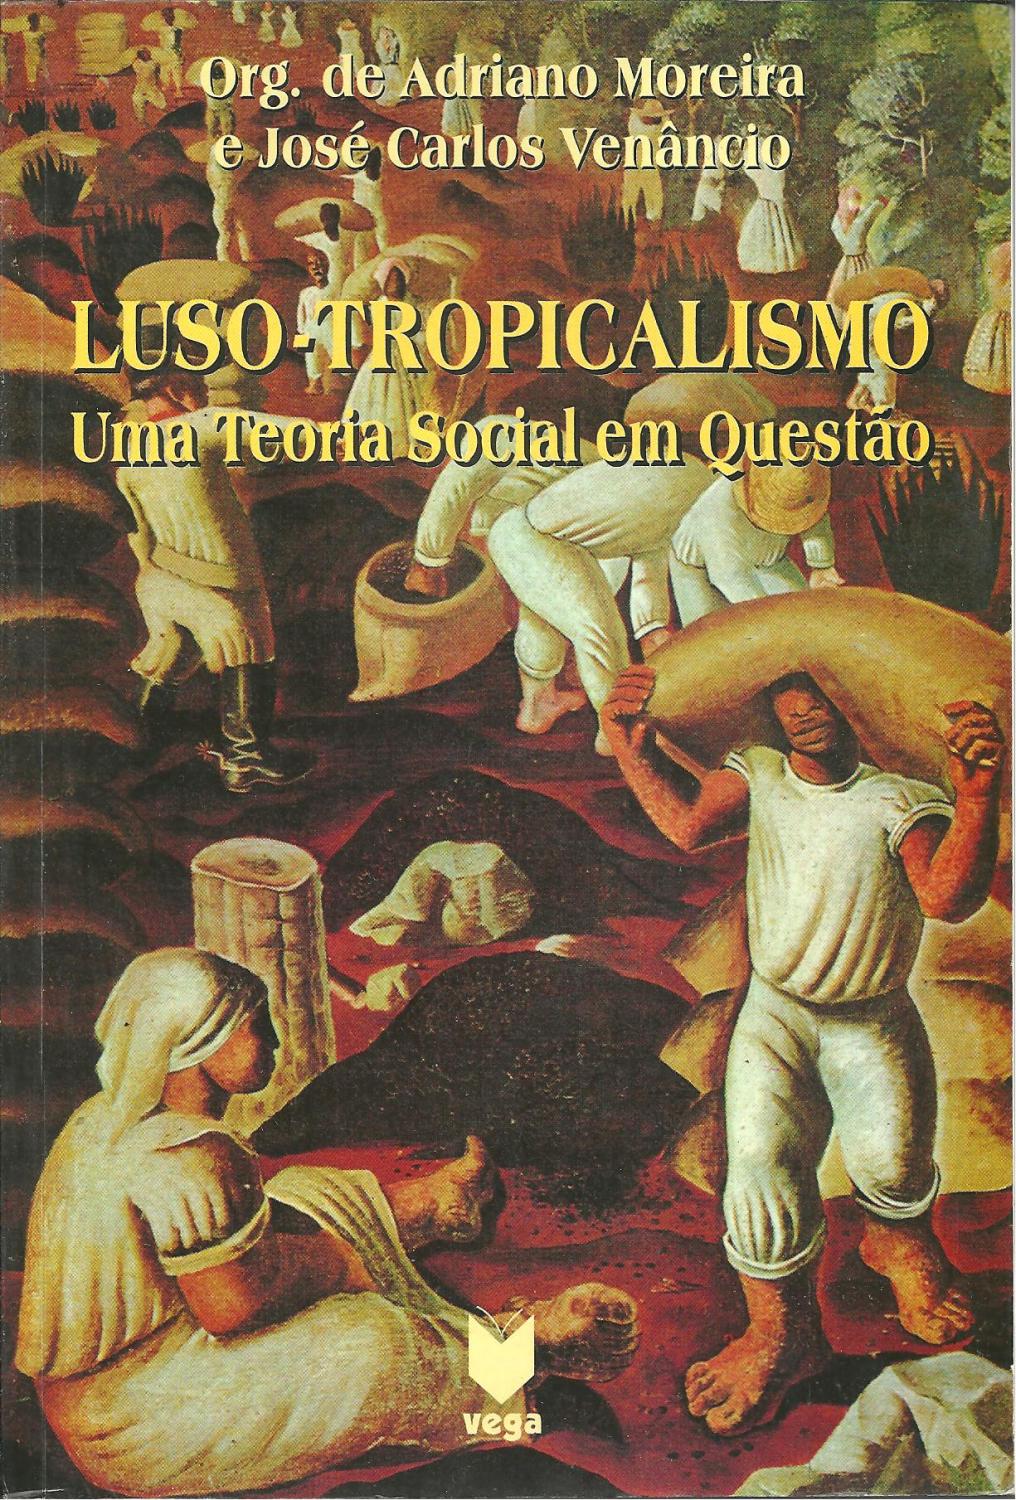 LUSO-TROPICALISMO. Uma Teoria Social em Questão - MOREIRA & VENÂNCIO, Adriano - José Carlos